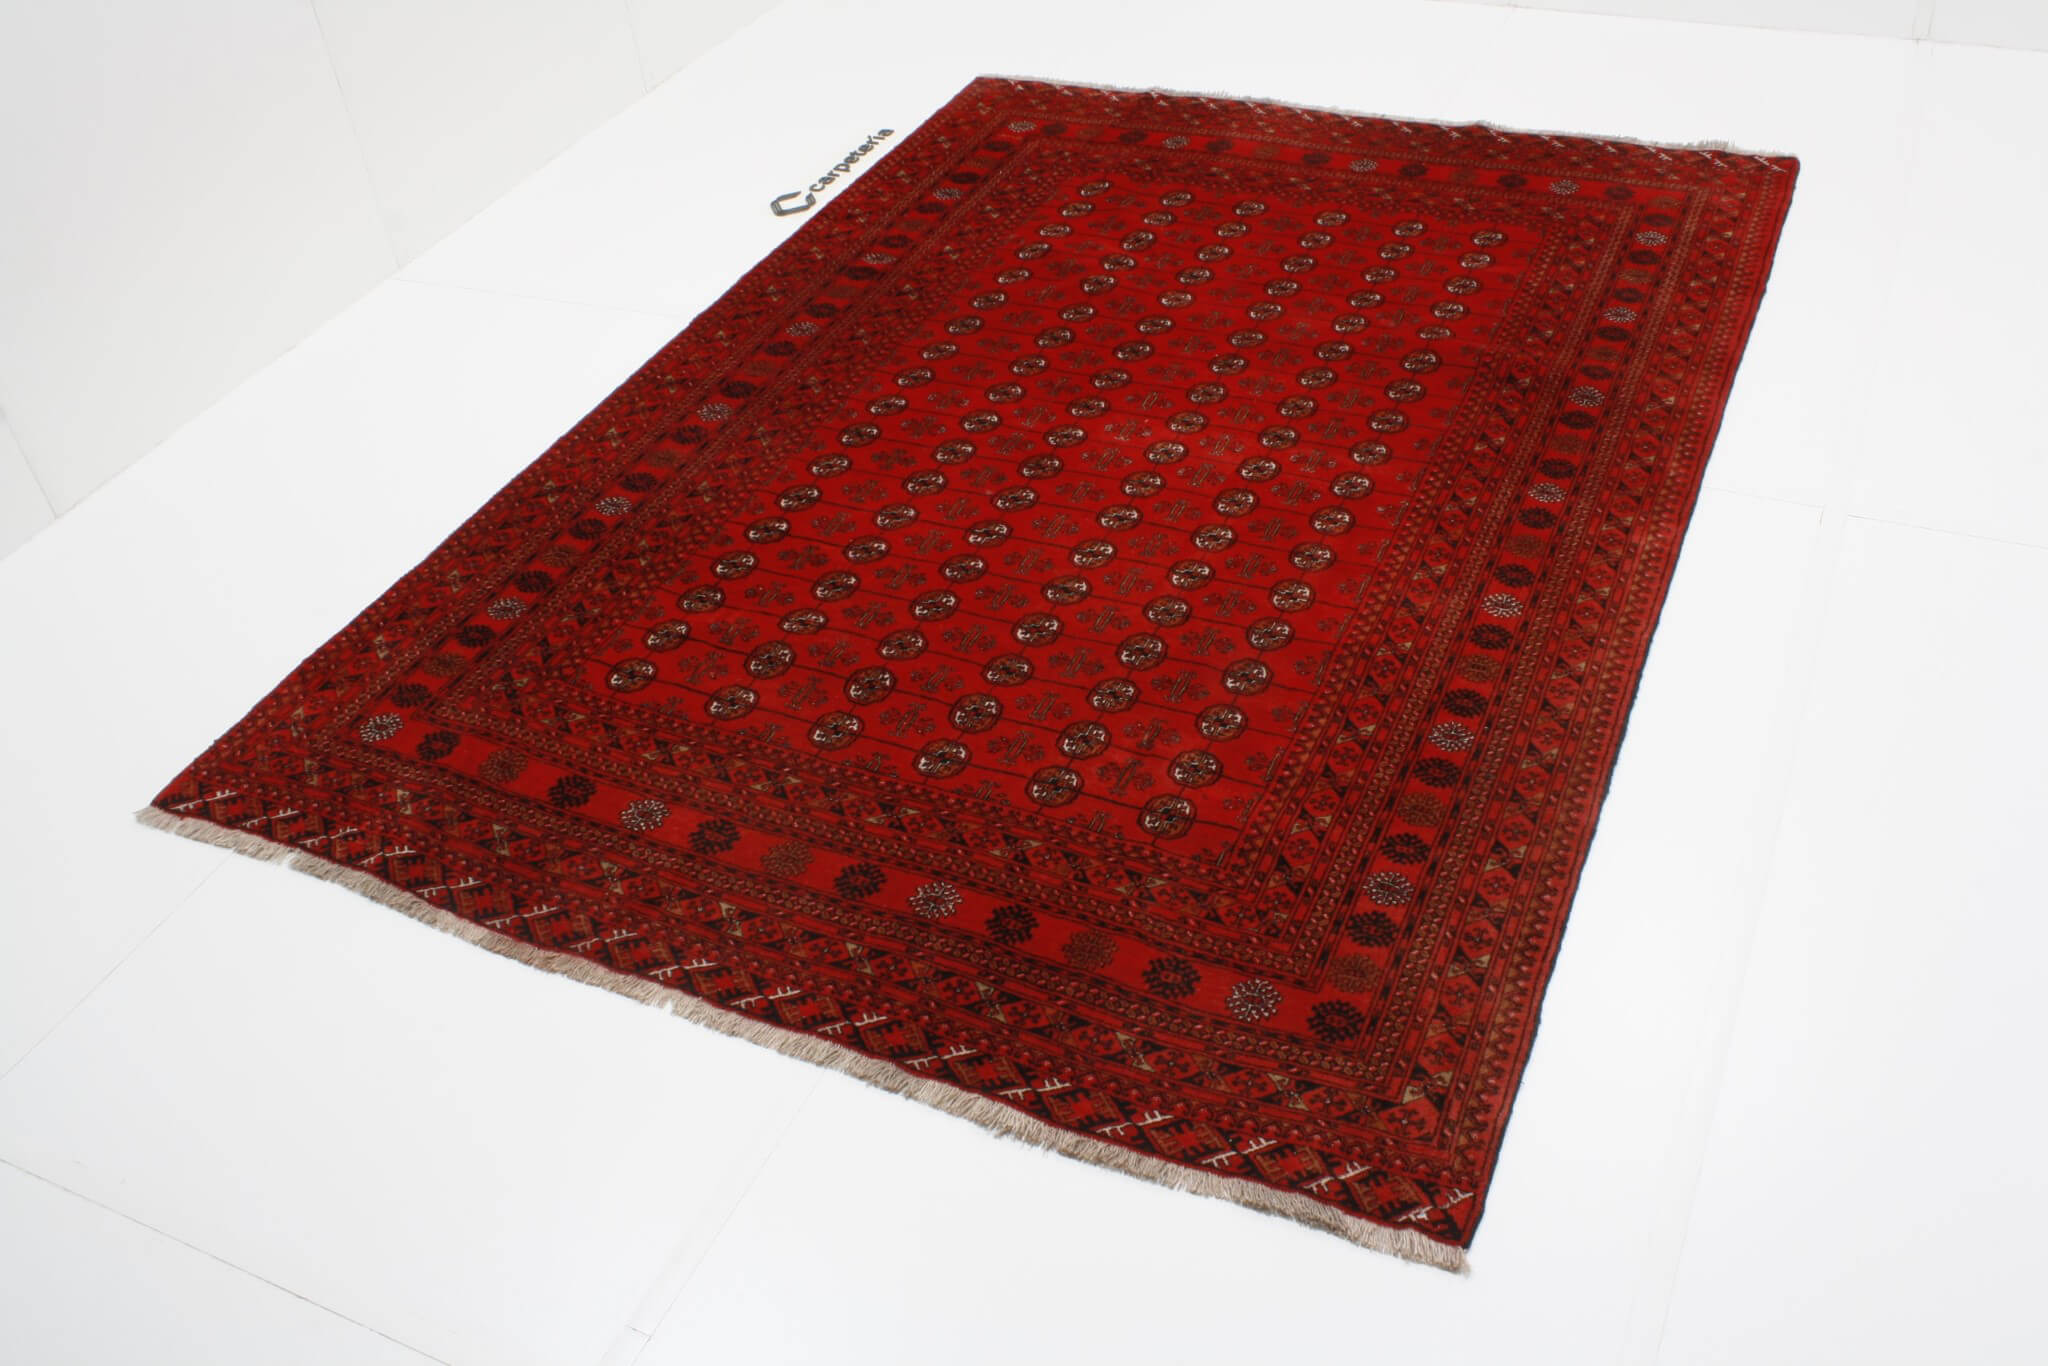 Persian rug Turkman